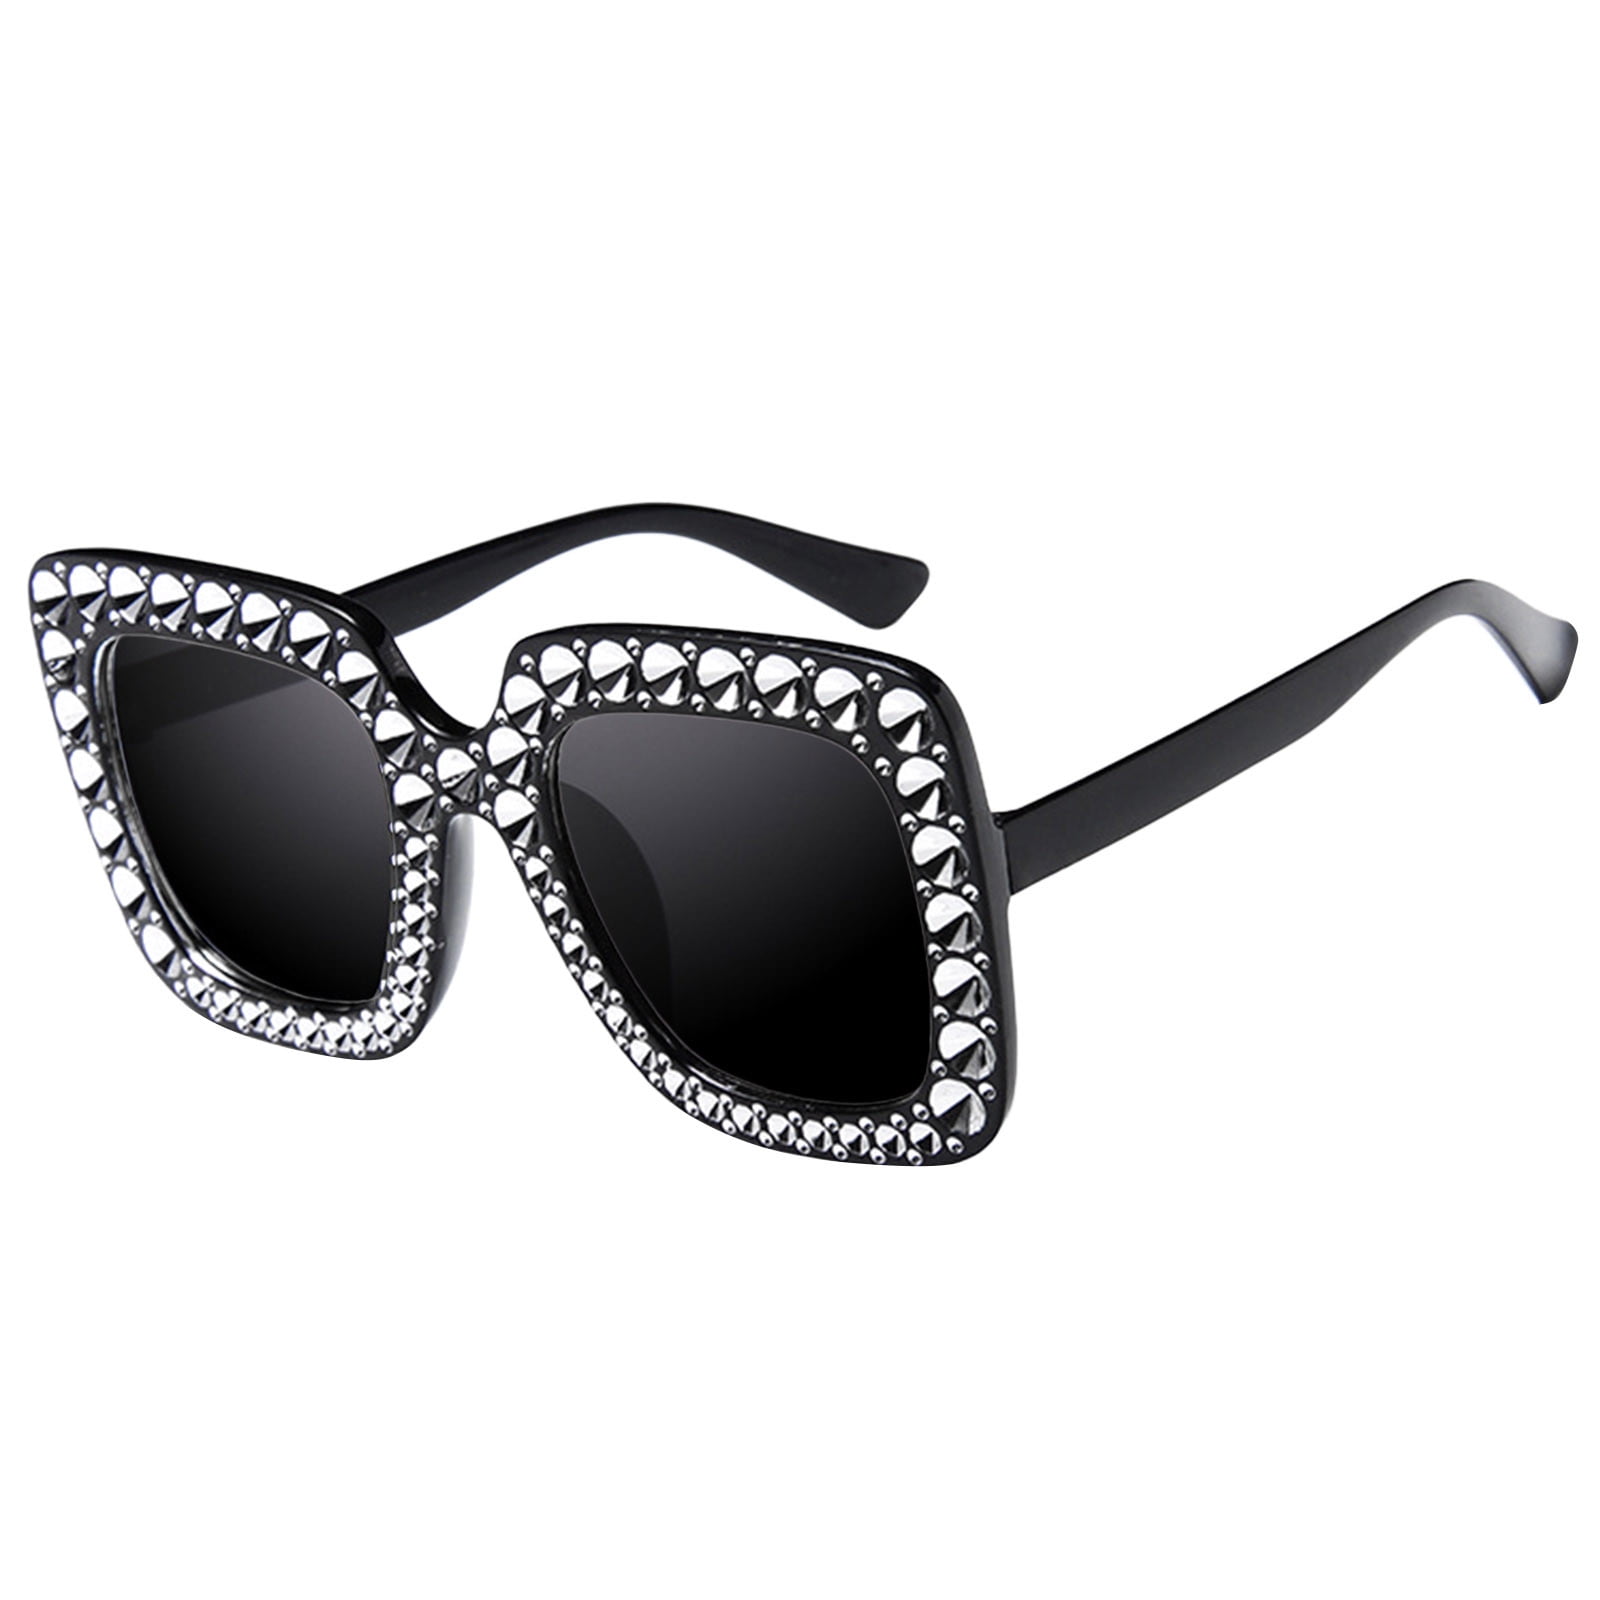 wofedyo Rystal Oversized Sunglasses Women Square Diamond Sunglasses ...